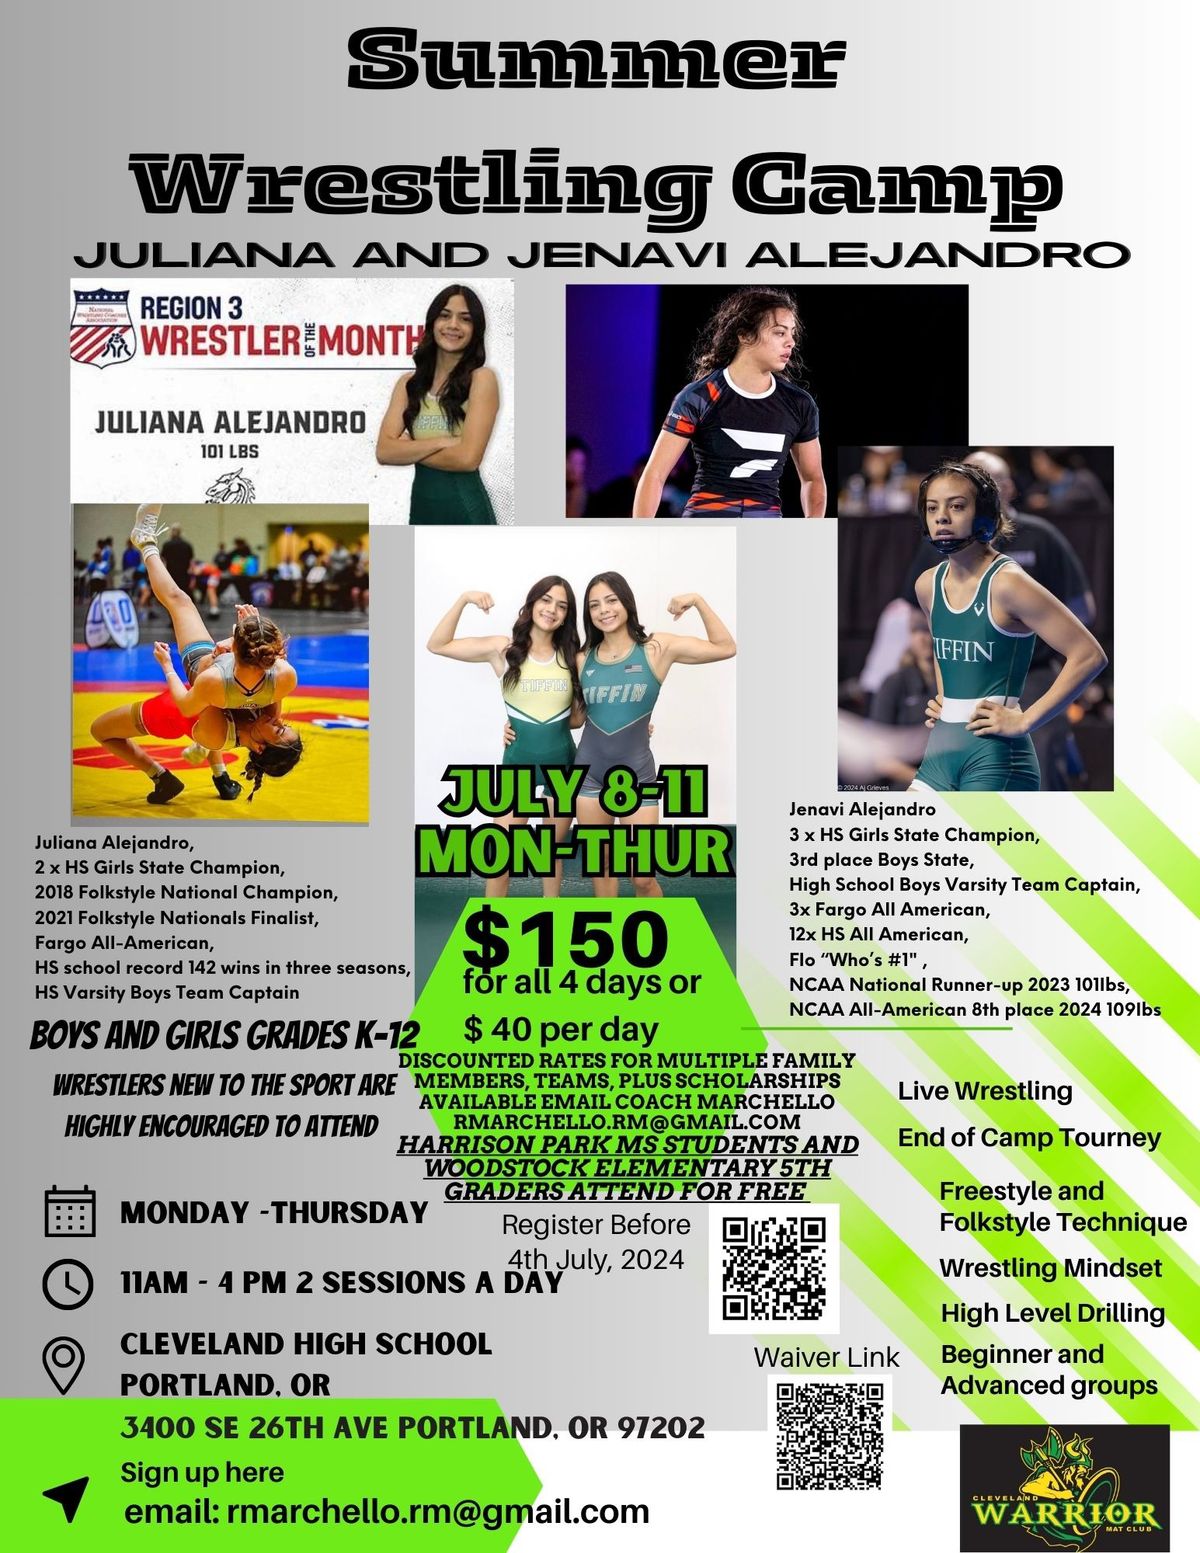 Alejandro Summer Wrestling Camp July 8-11 